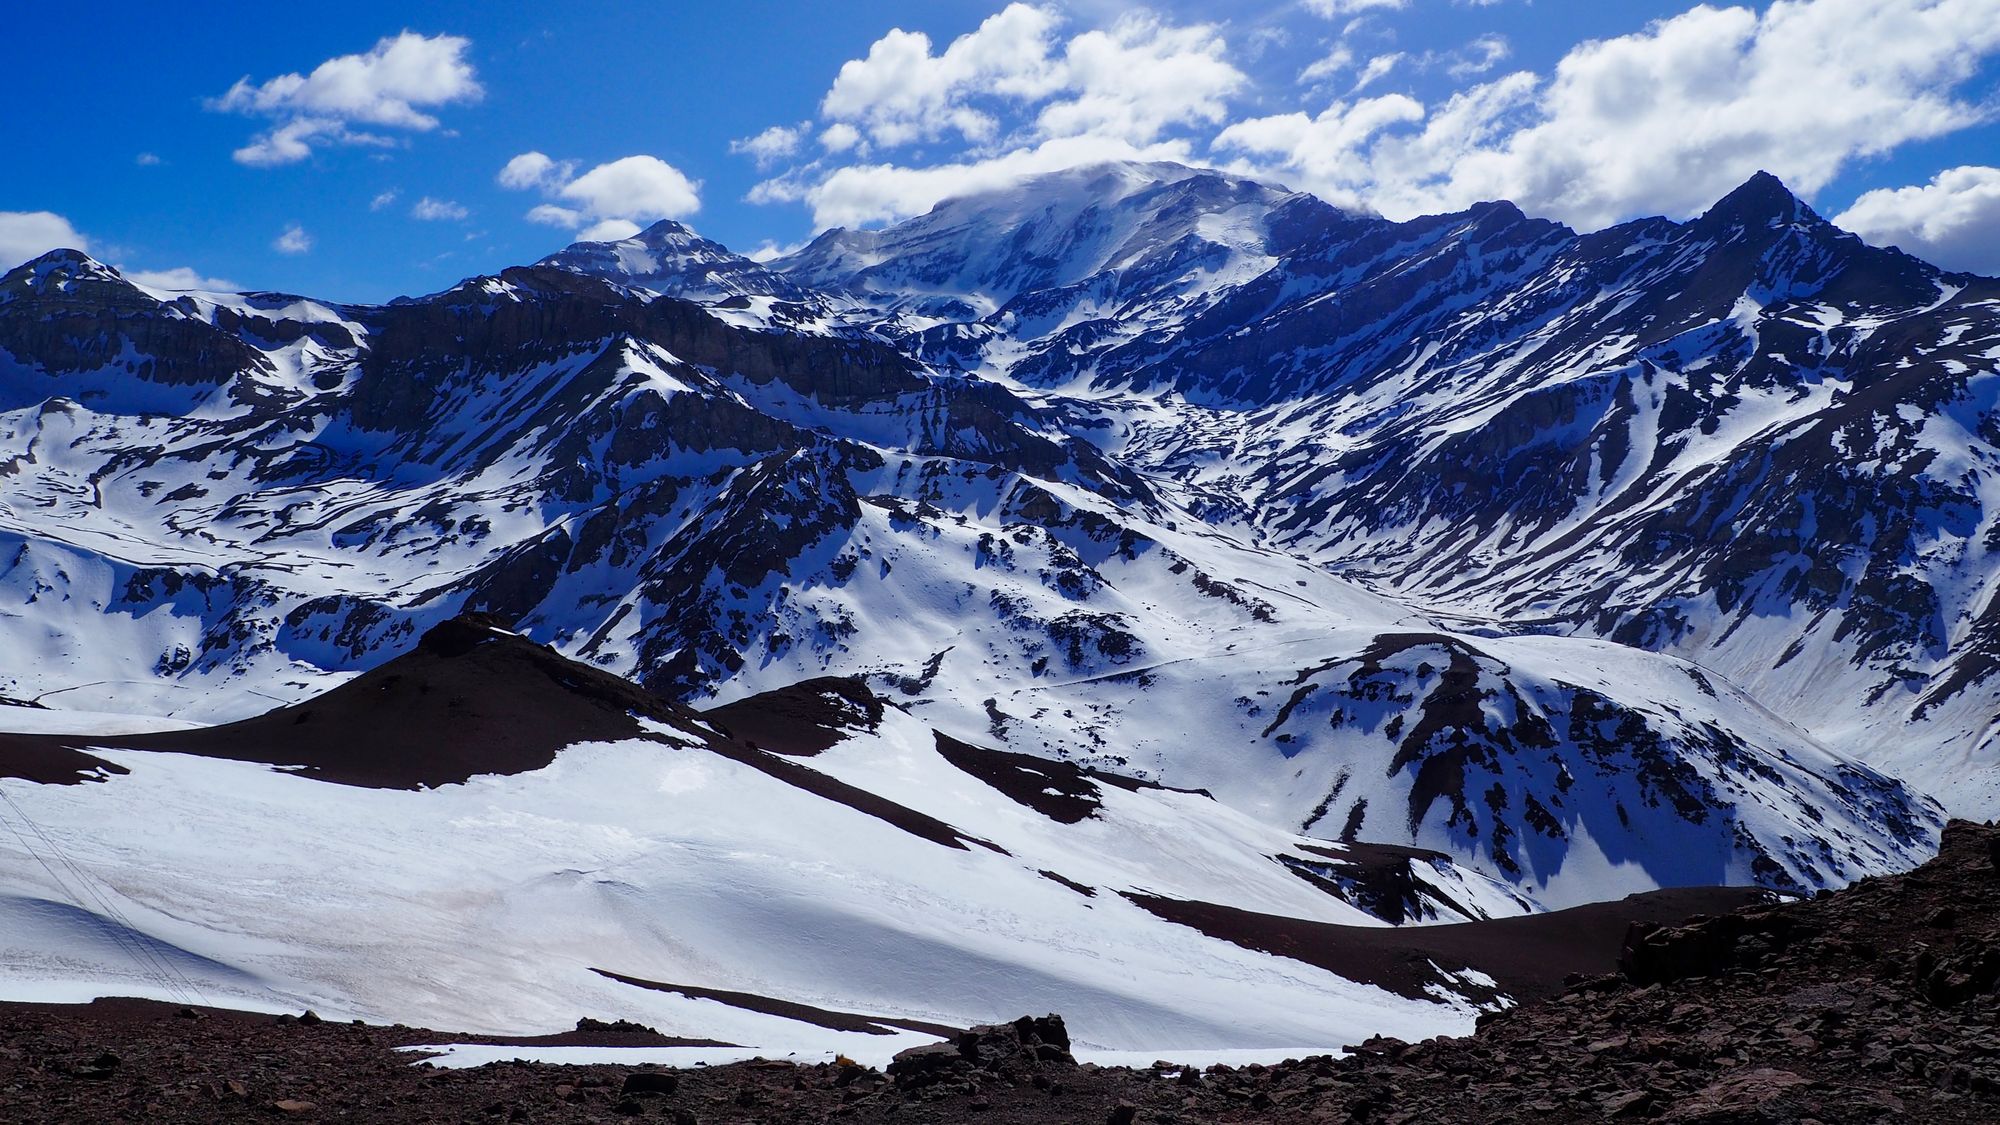 Photo of Cerro El Plomo from the top of Valle Nevado resort.